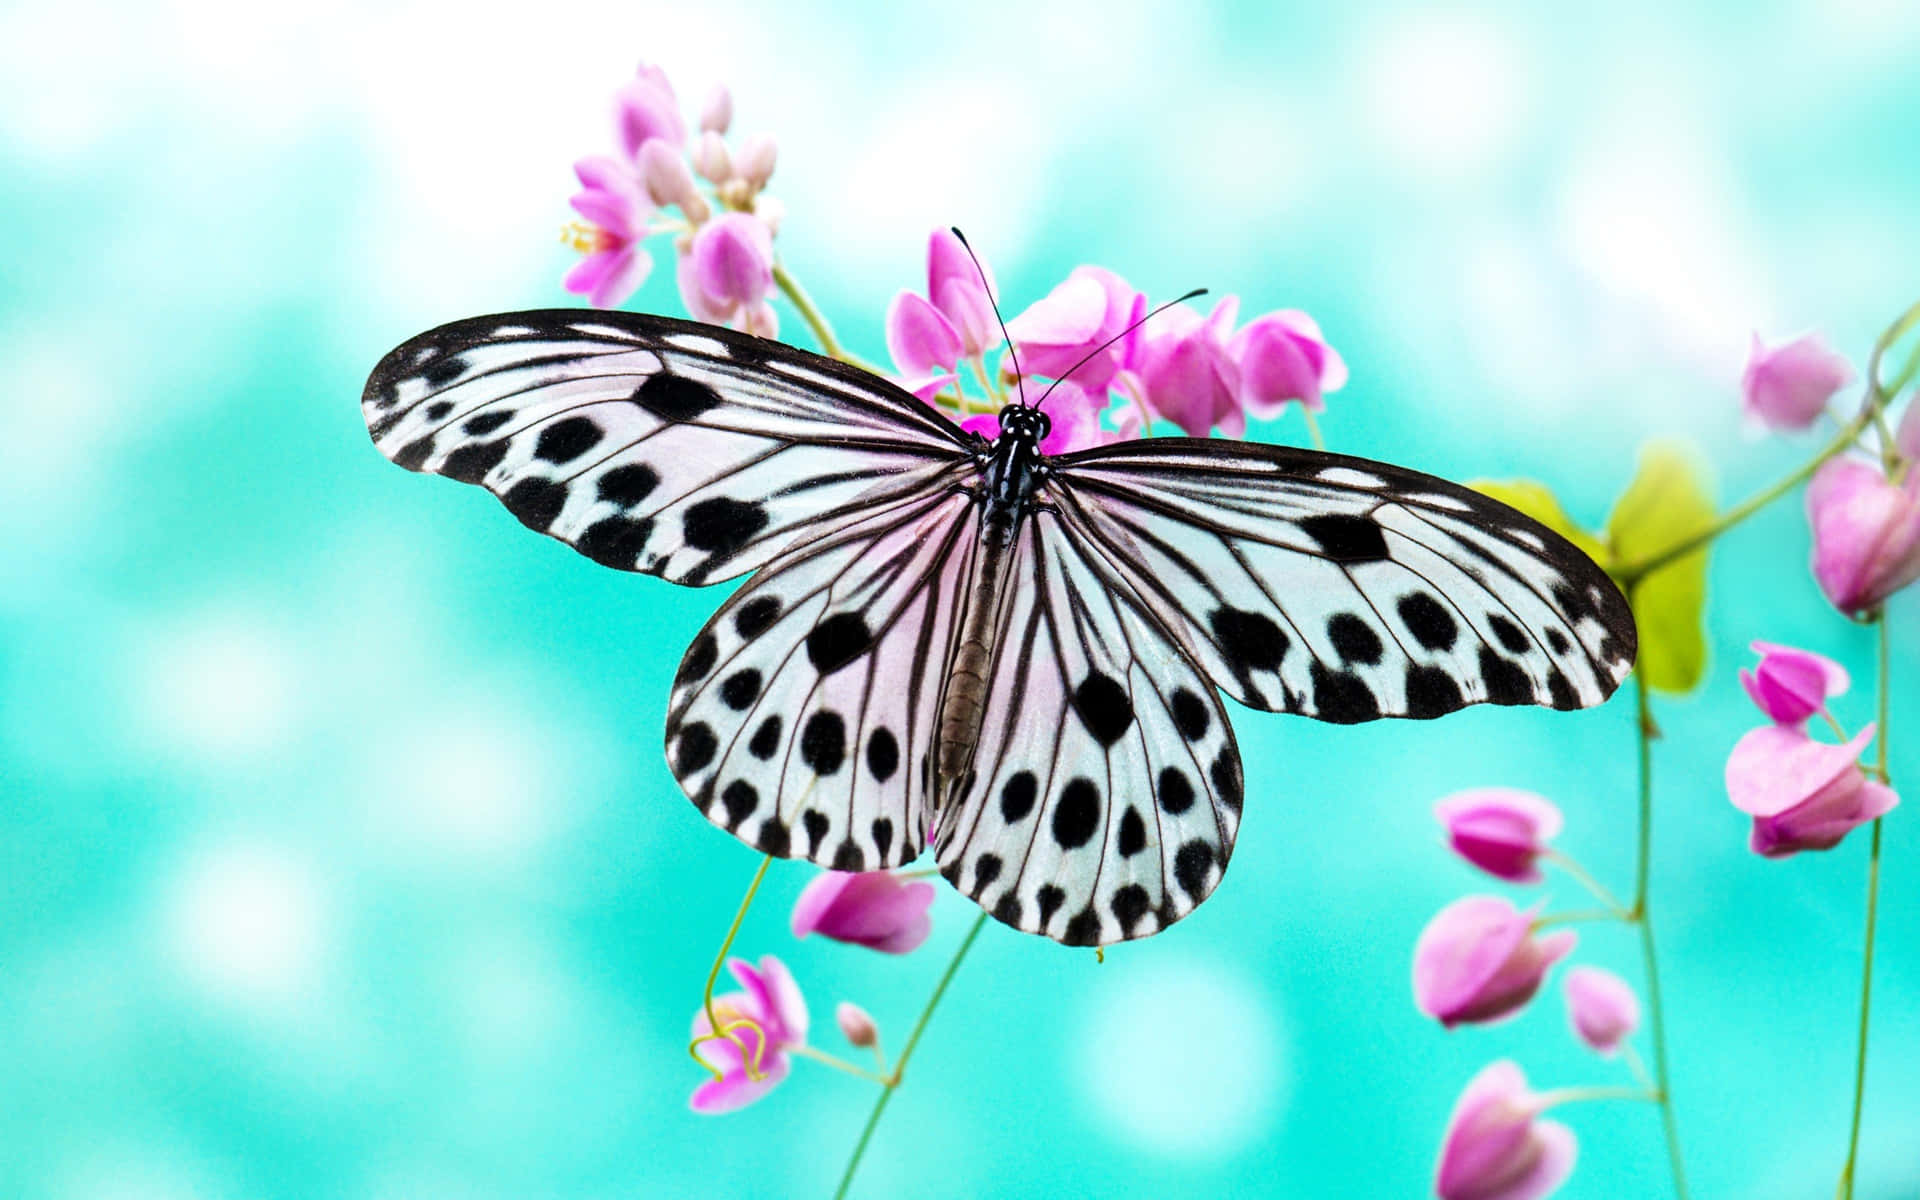 En sommerfugl sidder på en blomst, der blomstrer i et regnbue-fyldt himmel.